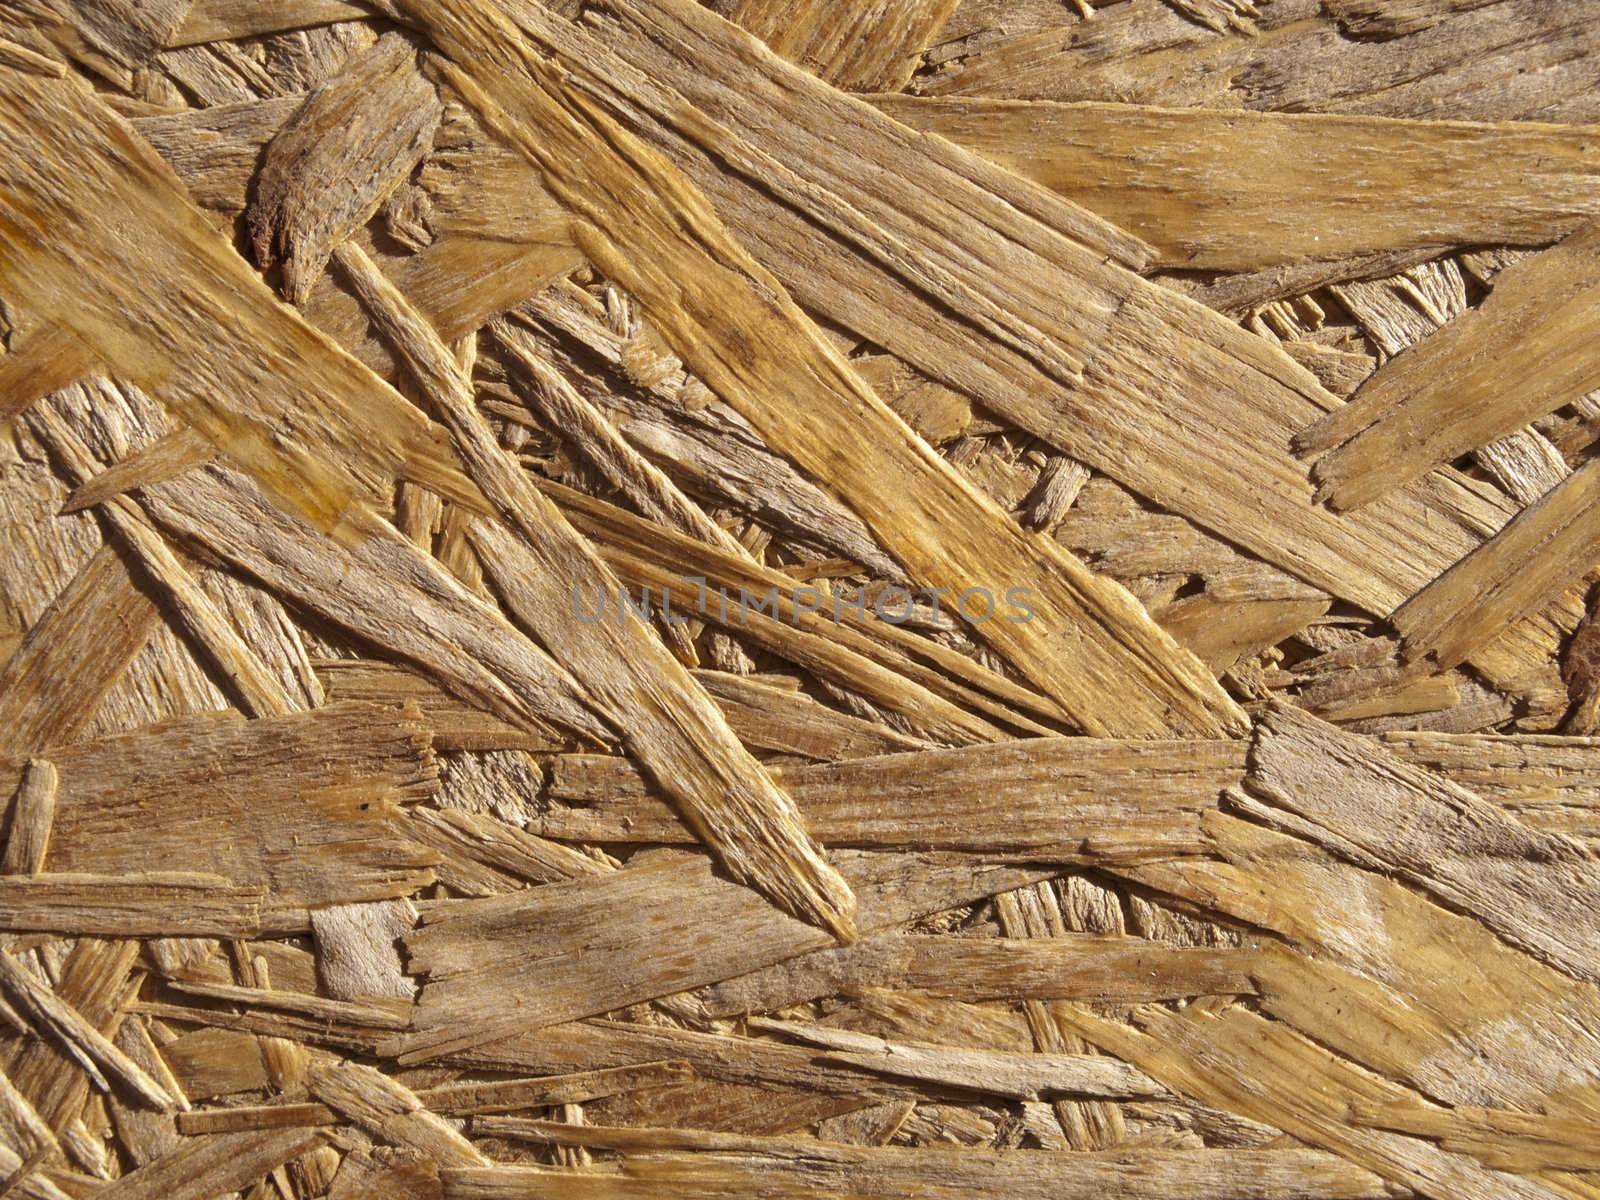 A wood texture by jochenteschke9